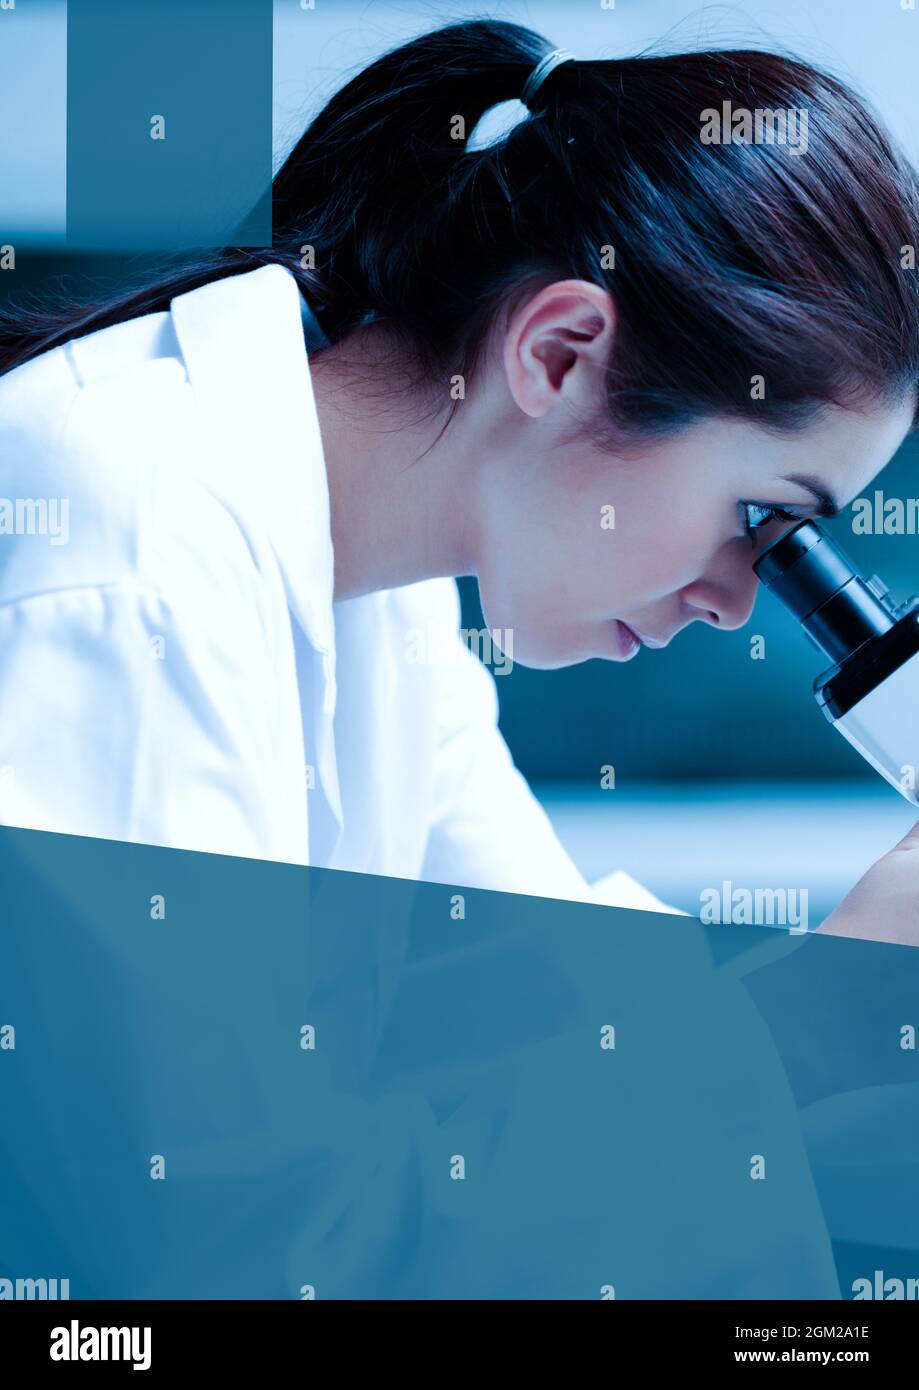 Banderole bleue avec espace de copie contre une employée de santé féminine utilisant un microscope au laboratoire Banque D'Images